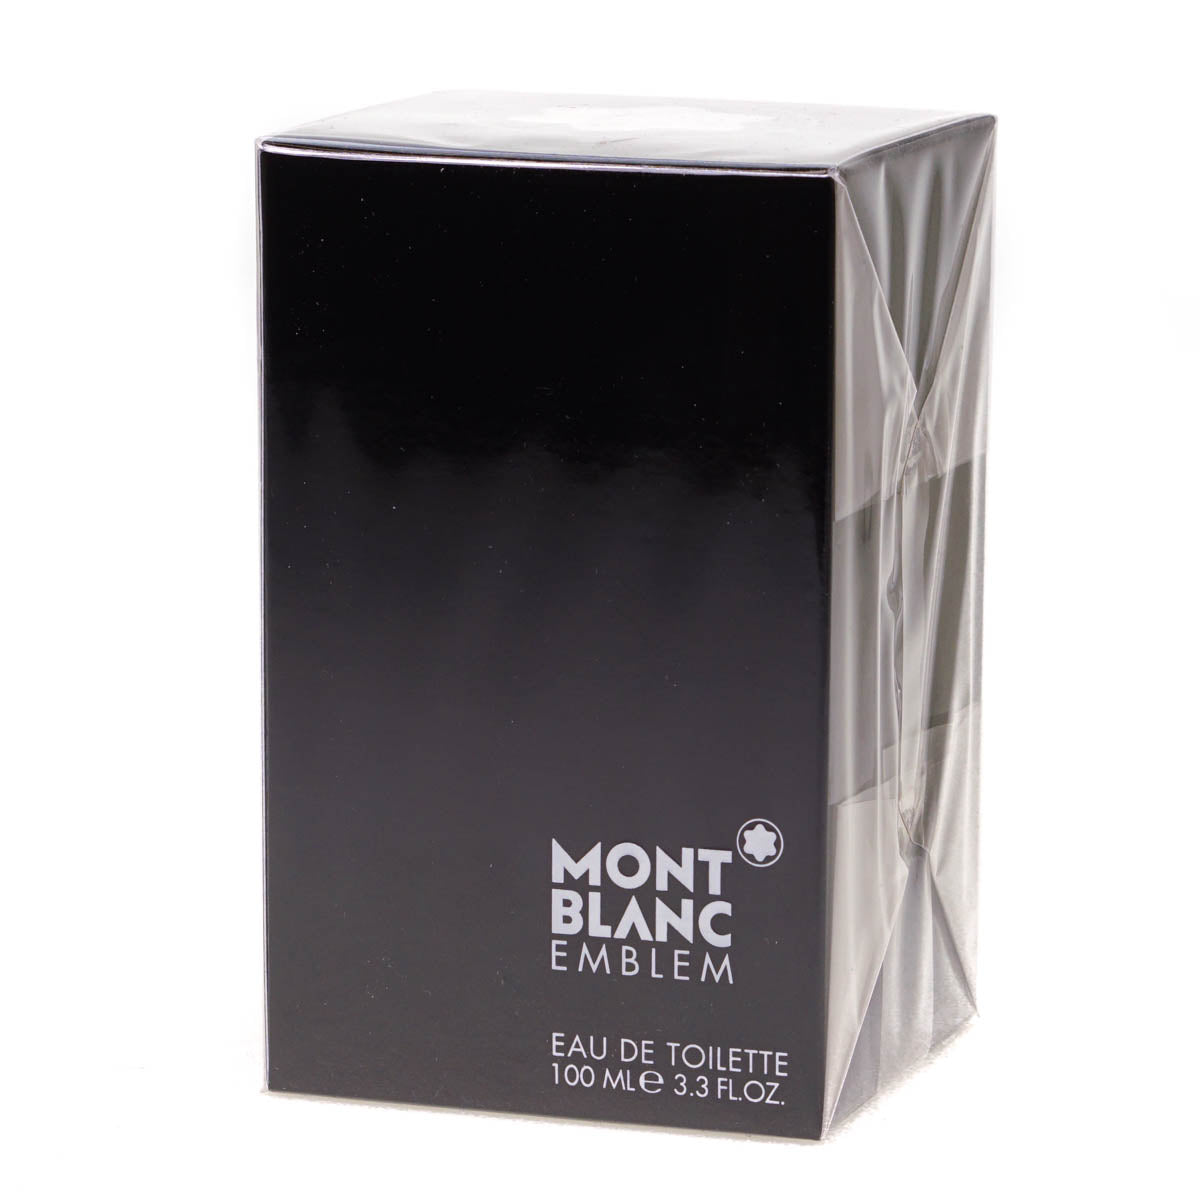 Mont Blanc Emblem 100ml Eau De Toilette (Blemished Box)